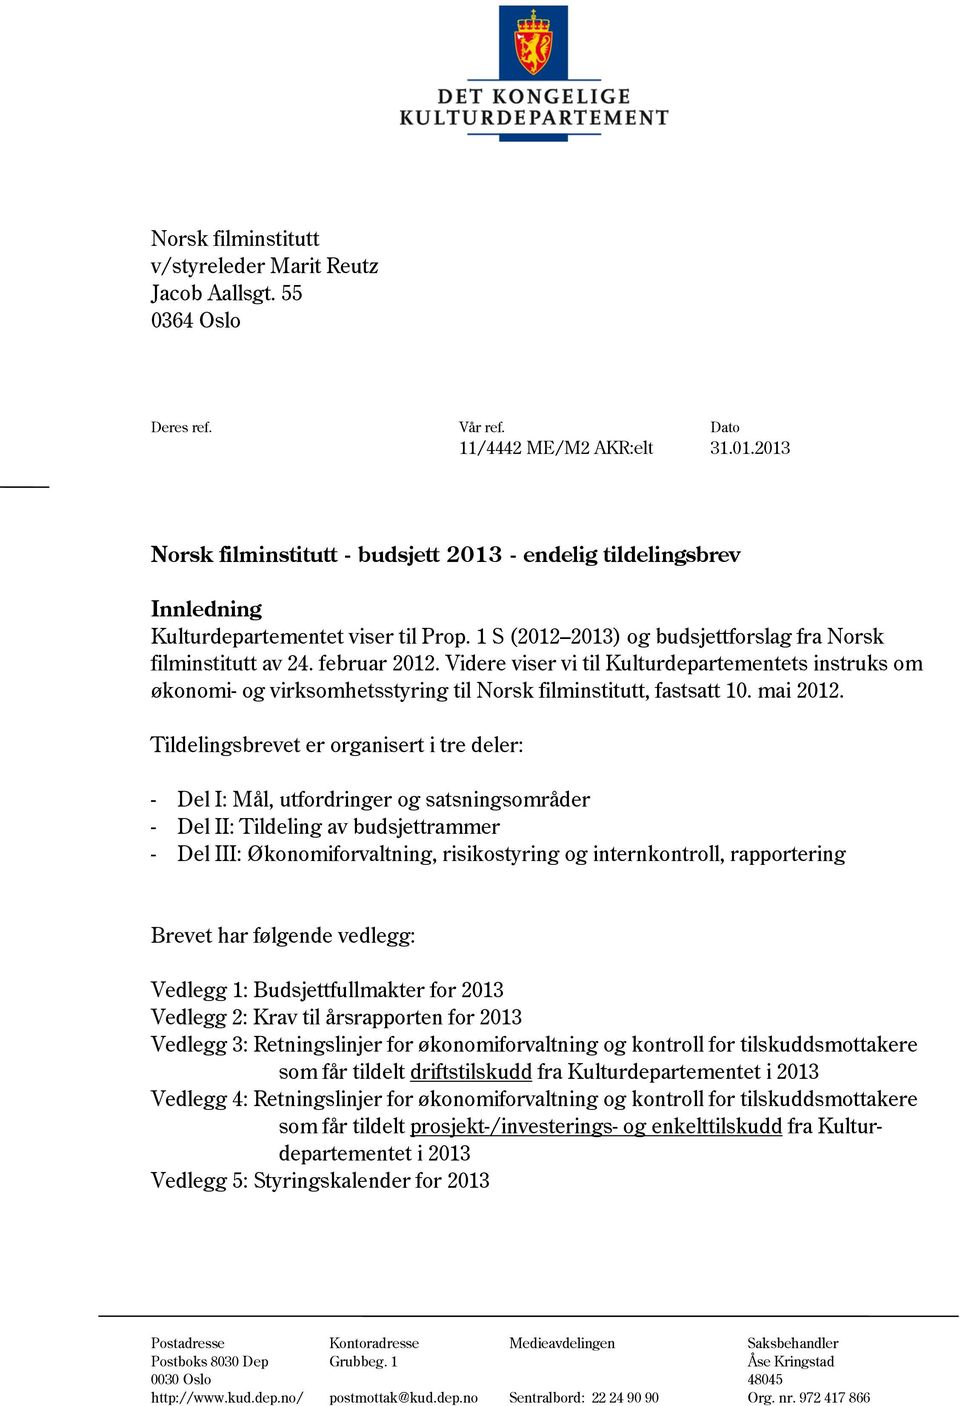 Videre viser vi til Kulturdepartementets instruks om økonomi- og virksomhetsstyring til Norsk filminstitutt, fastsatt 10. mai 2012.